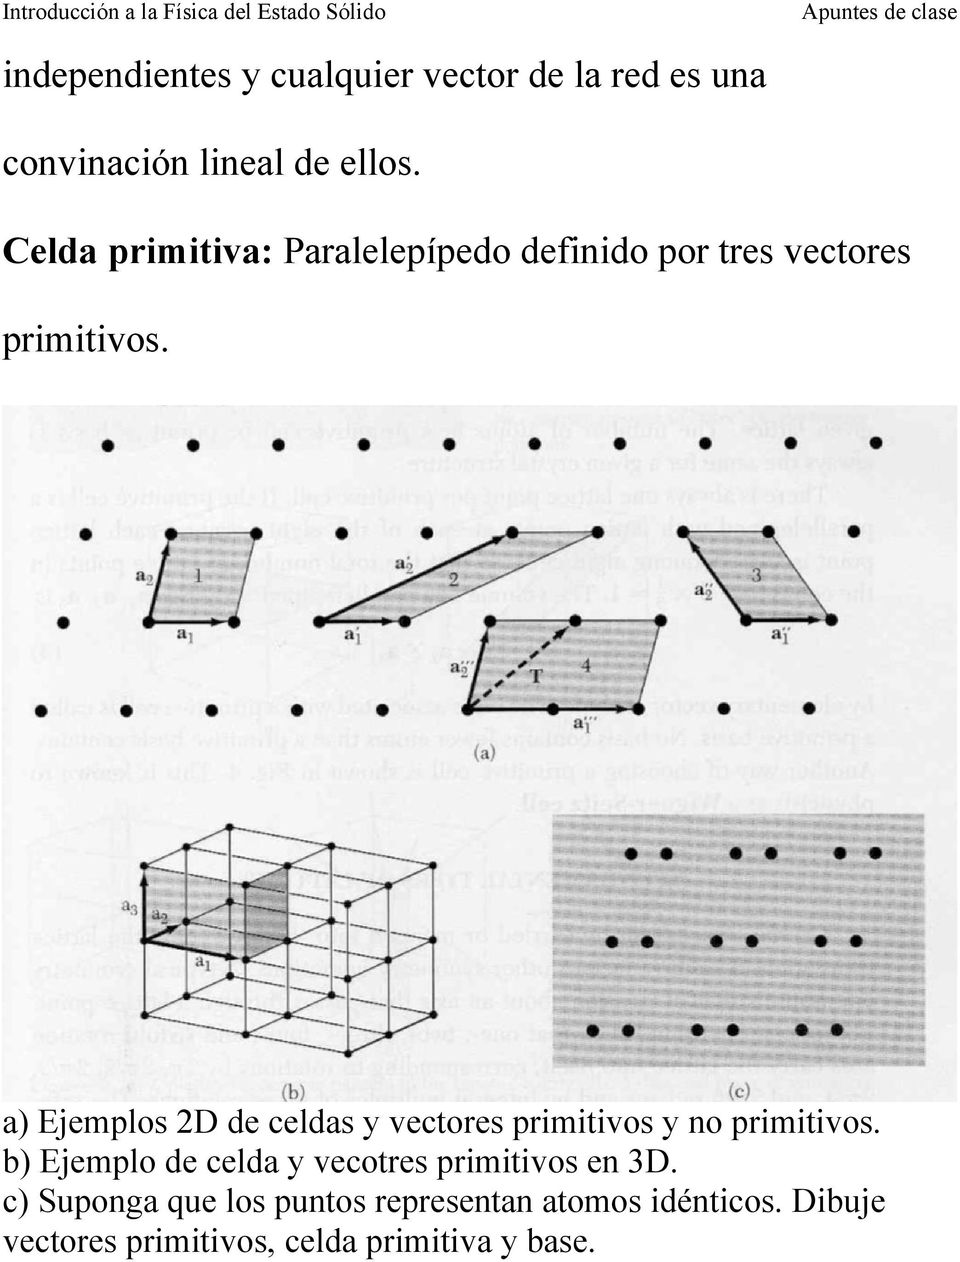 a) Ejemplos 2D de celdas y vectores primitivos y no primitivos.